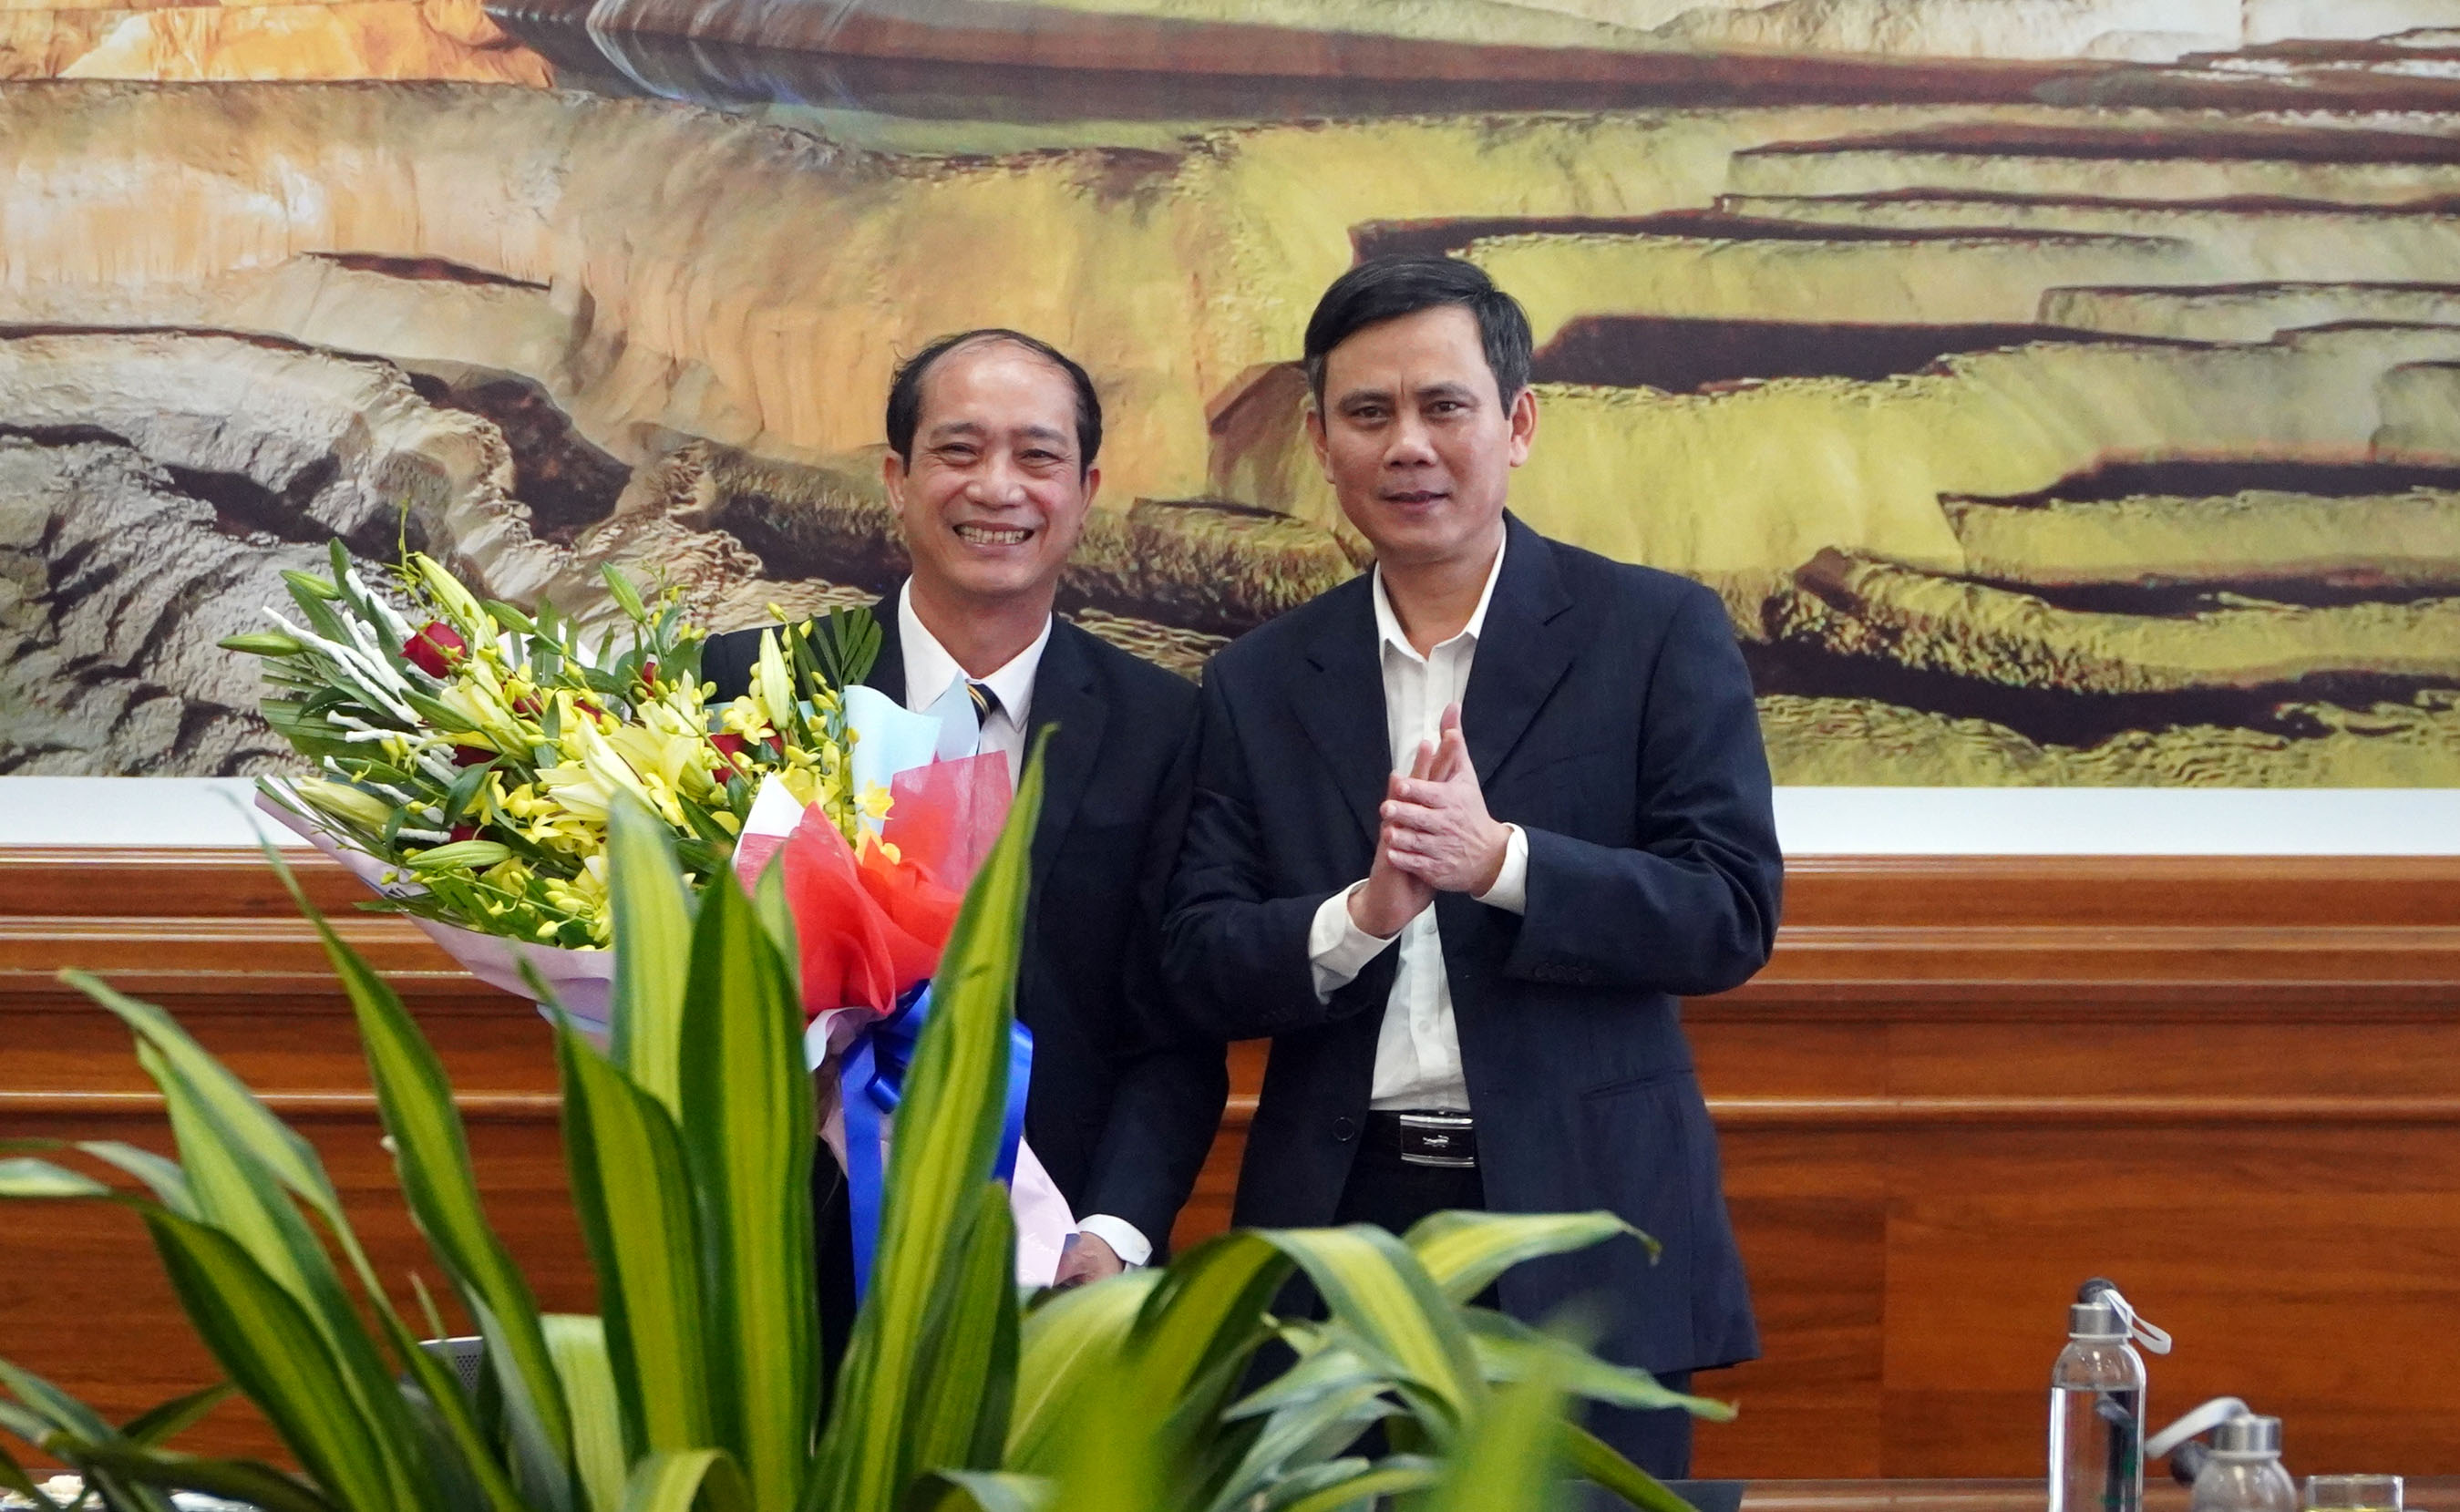 Đồng chí phó Bí thư Thường trực Tỉnh ủy tặng hoa cho đồng chí Đặng Thái Sơn